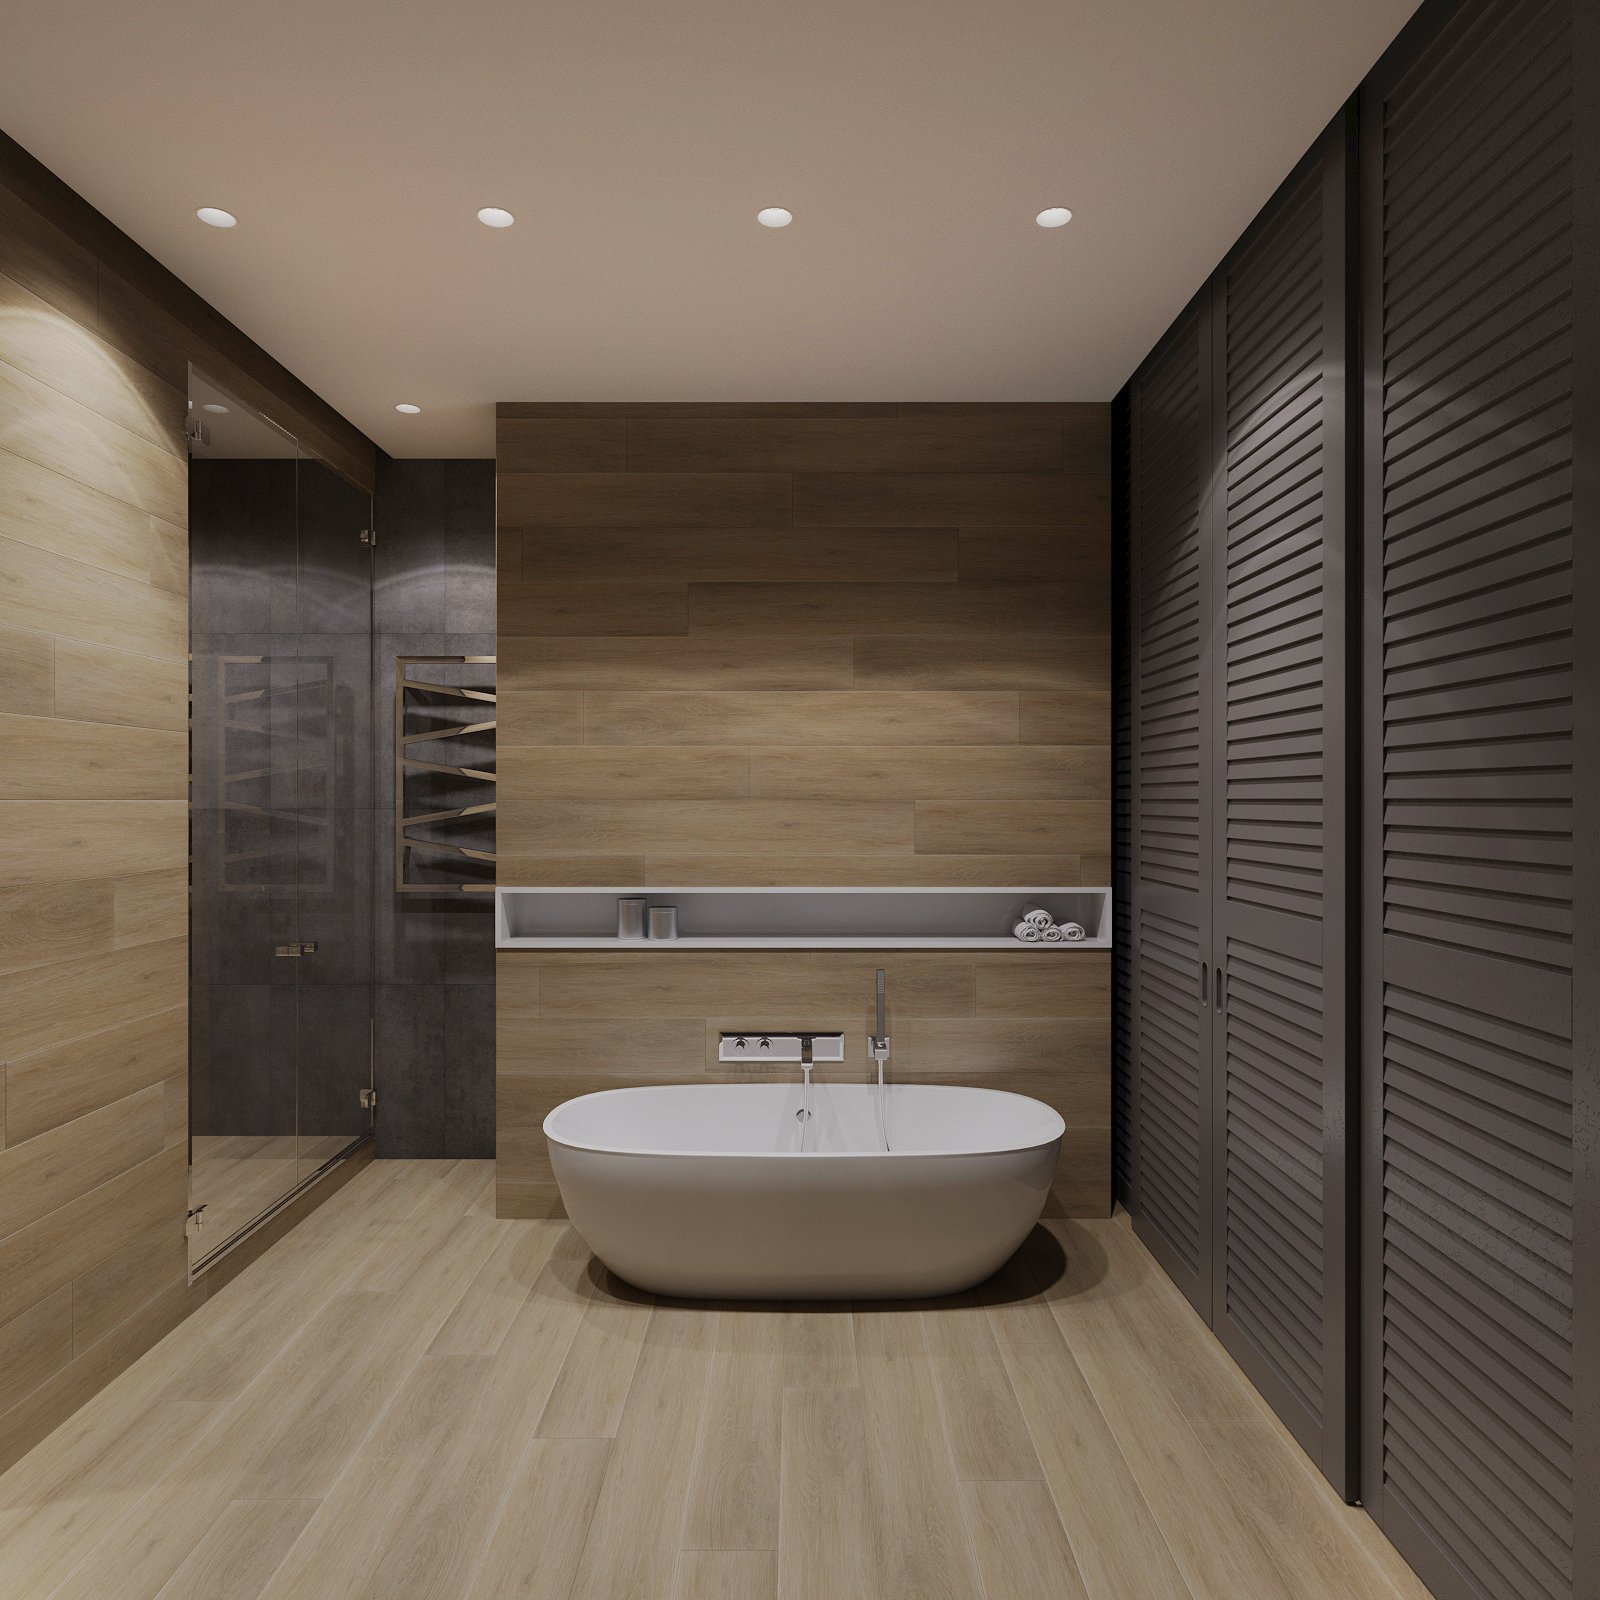 Как оформить ванную в стиле минимализм, показываем на примере нашего проекта City Apartment